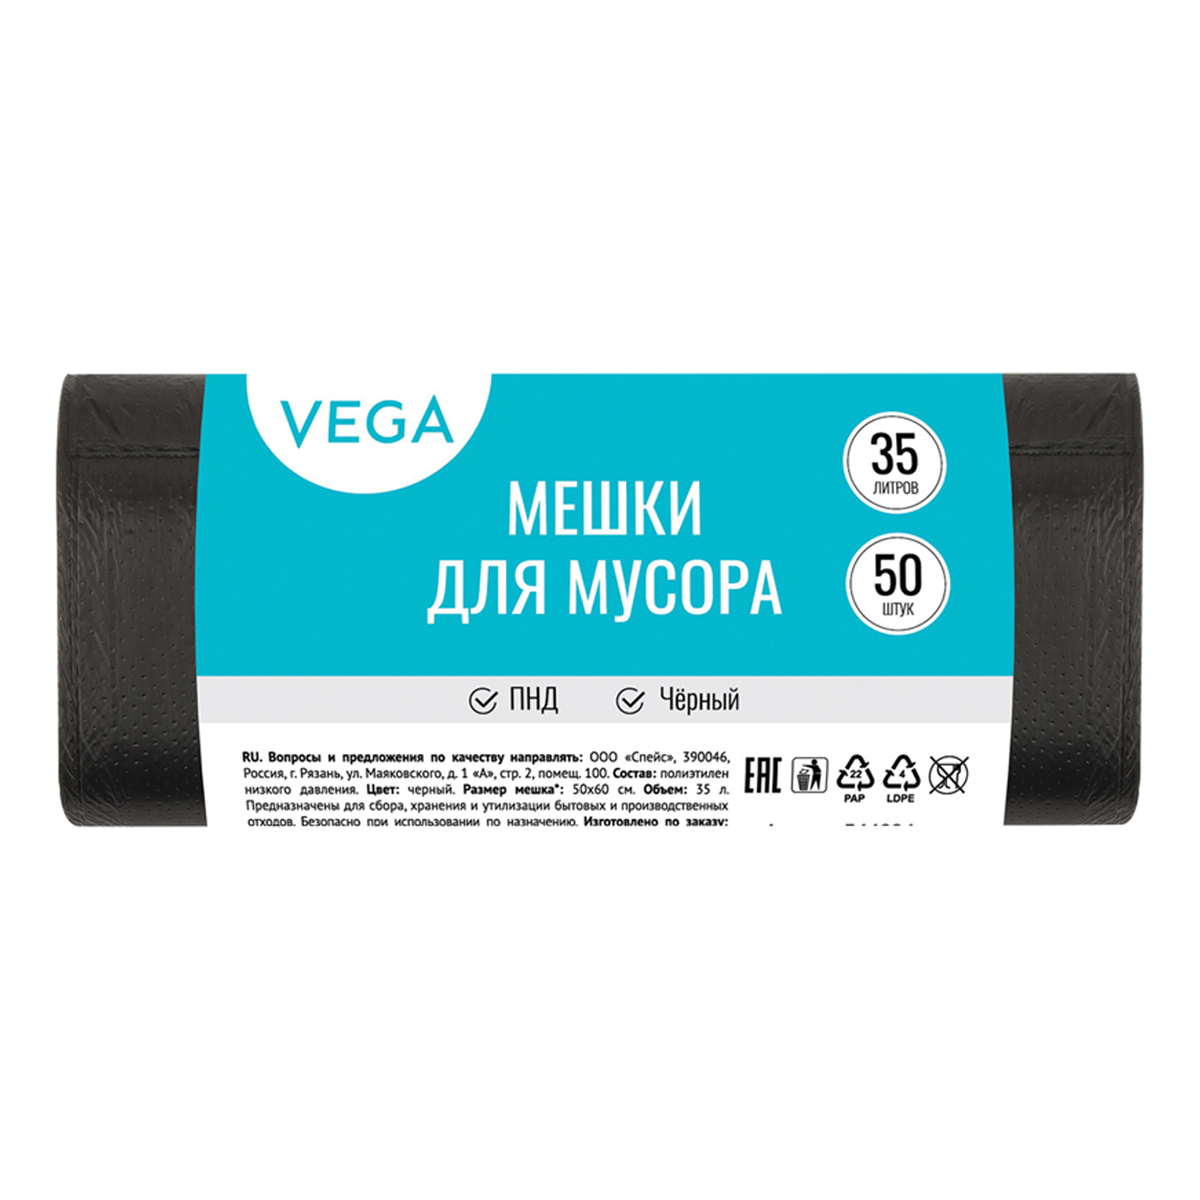 Мешки для мусора 35л Vega ПНД, 50*60см, 6мкм, 50шт., черные, в рулоне